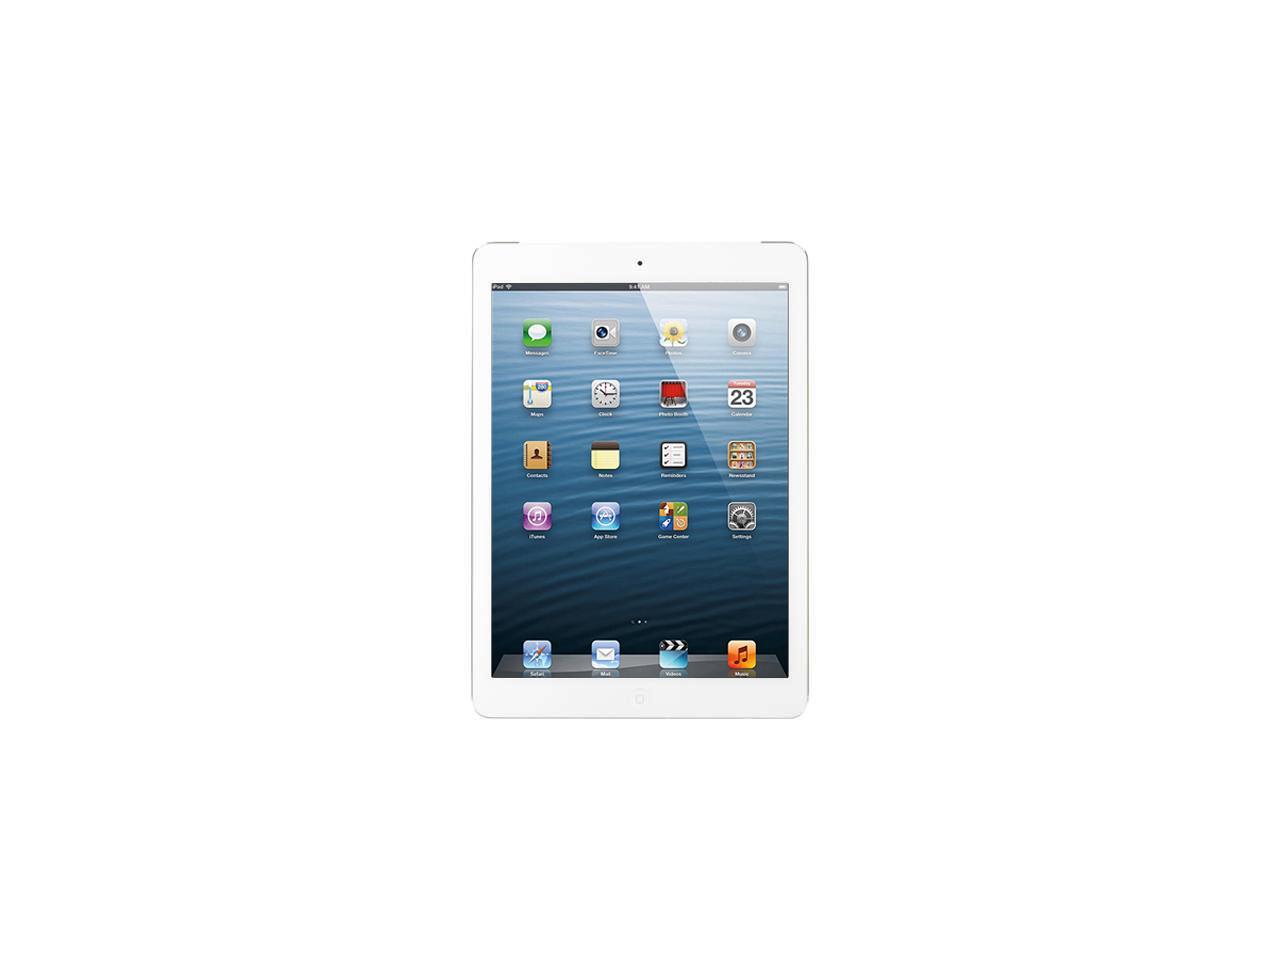 Apple iPad Air 16GB 9.7" Unlocked GSM / AT&T 4G + Wi-Fi Tablet PC